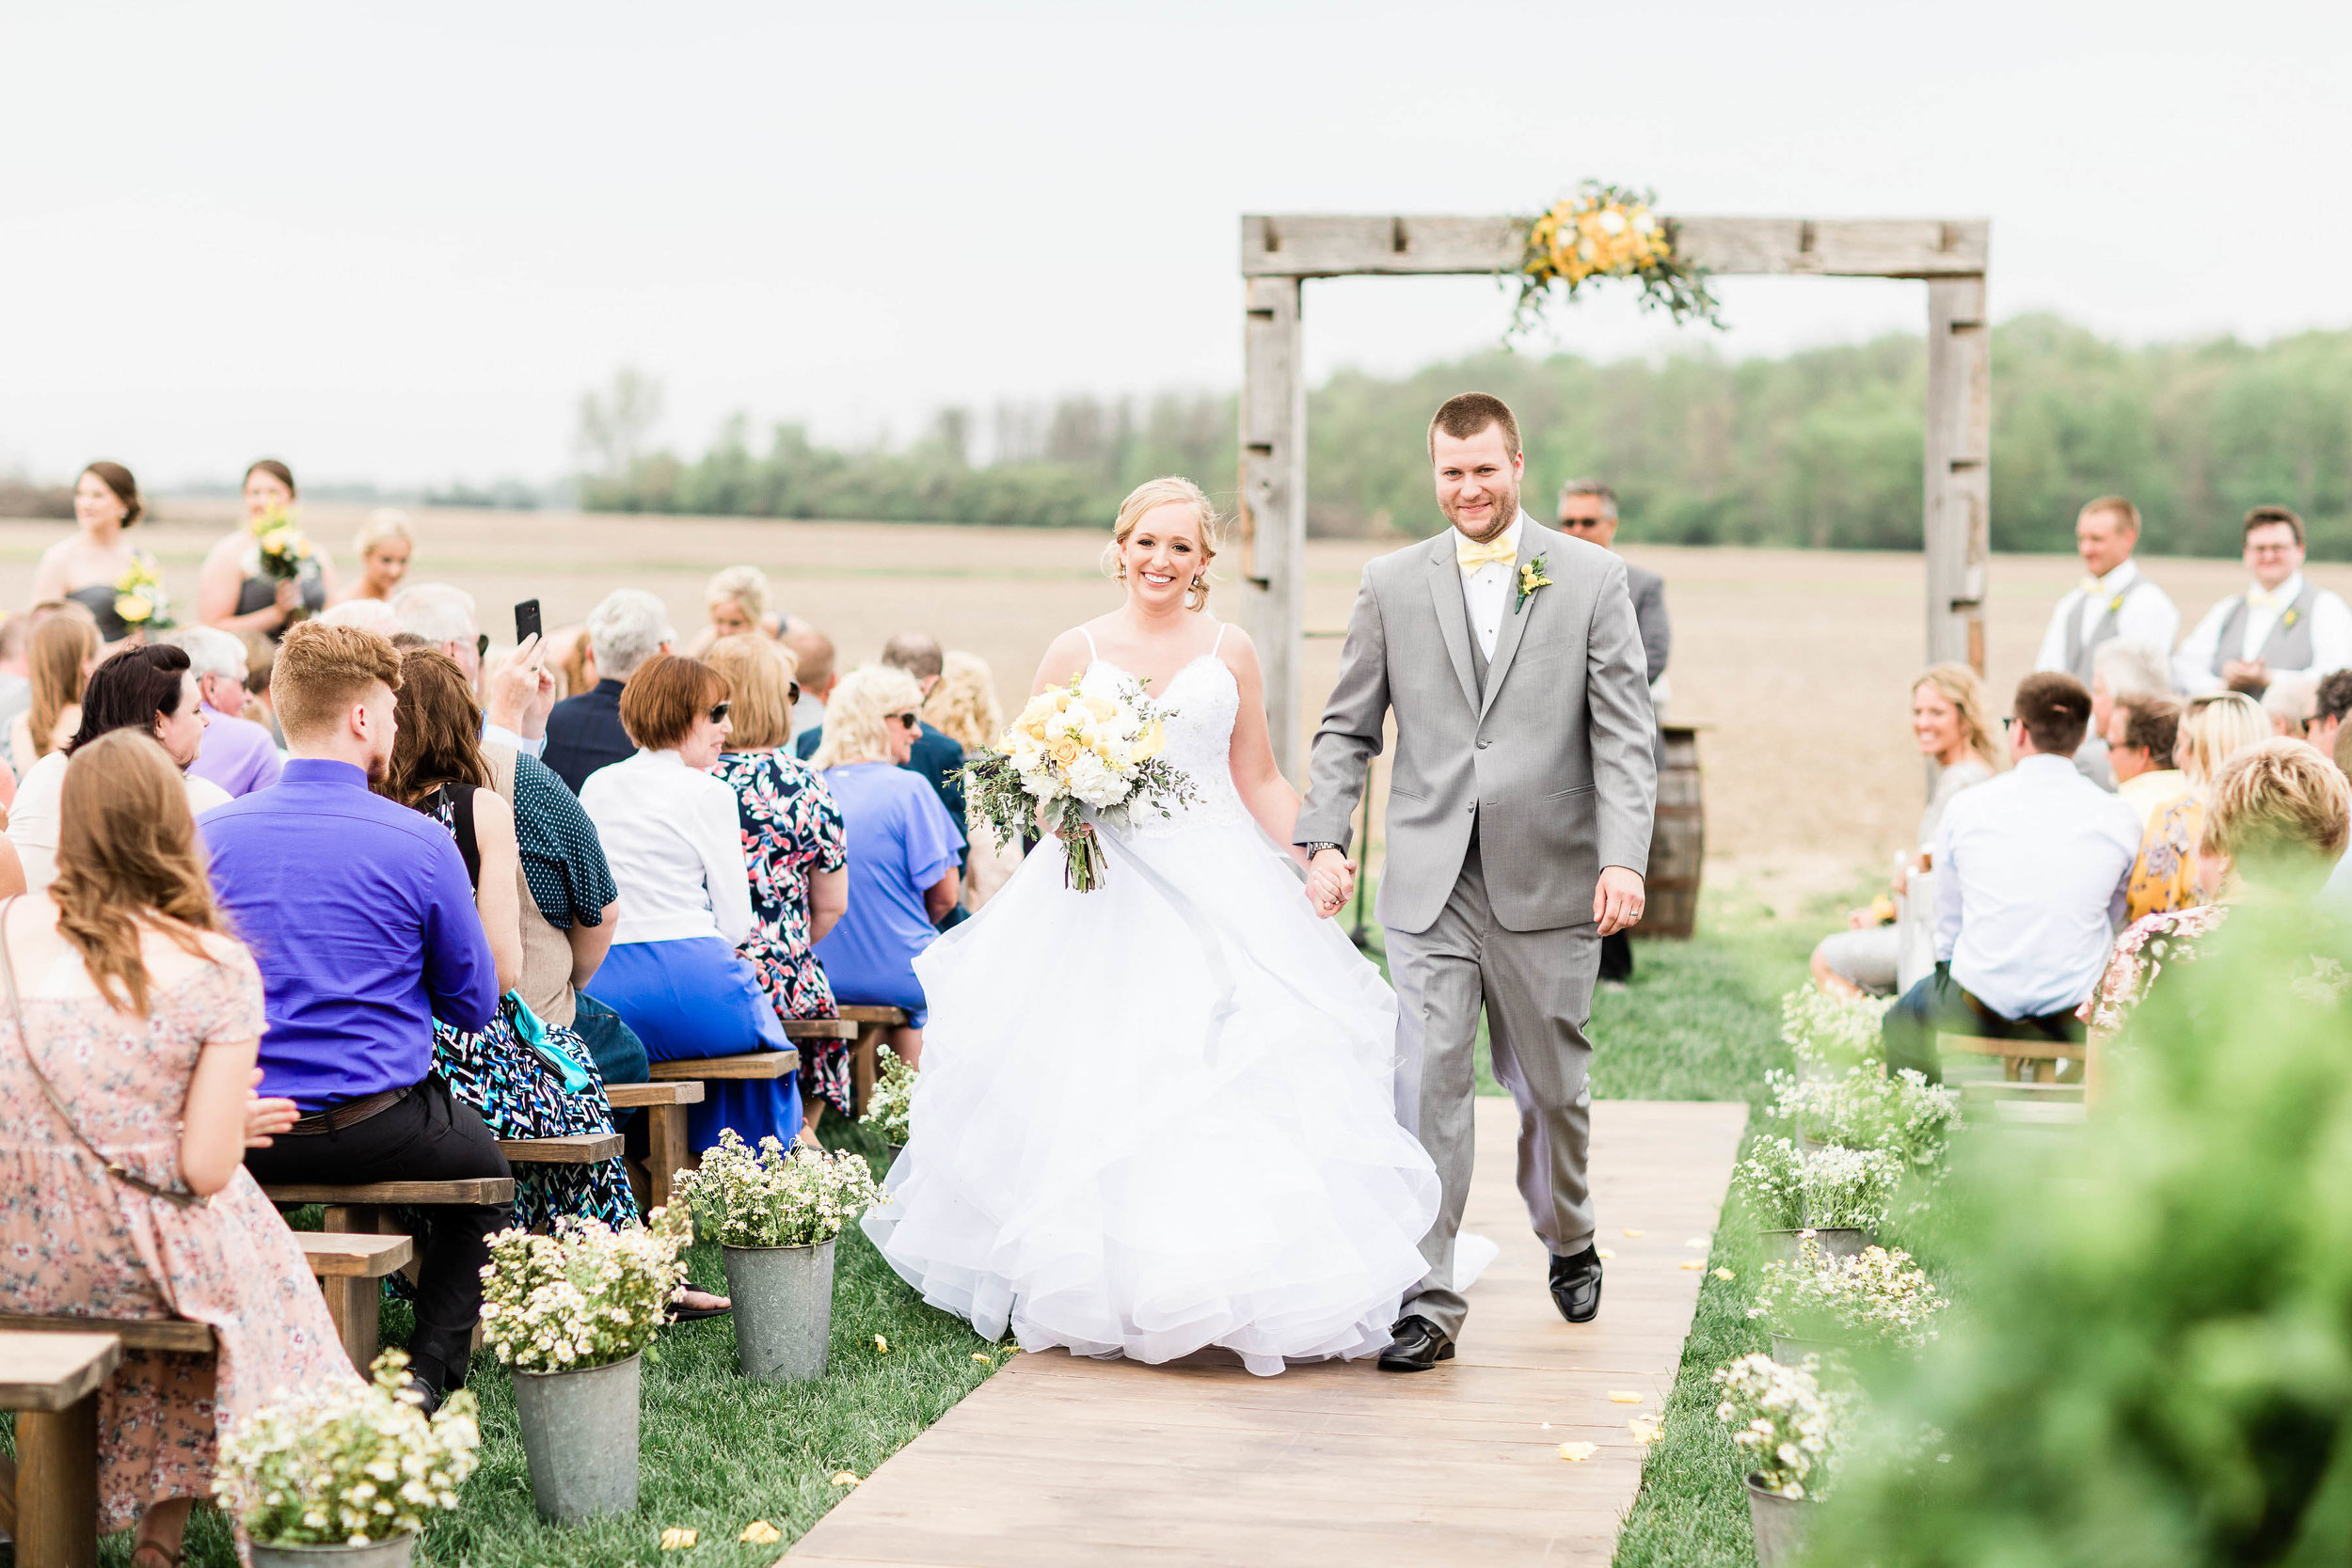 c southwest ohio wedding photographer-59.jpg